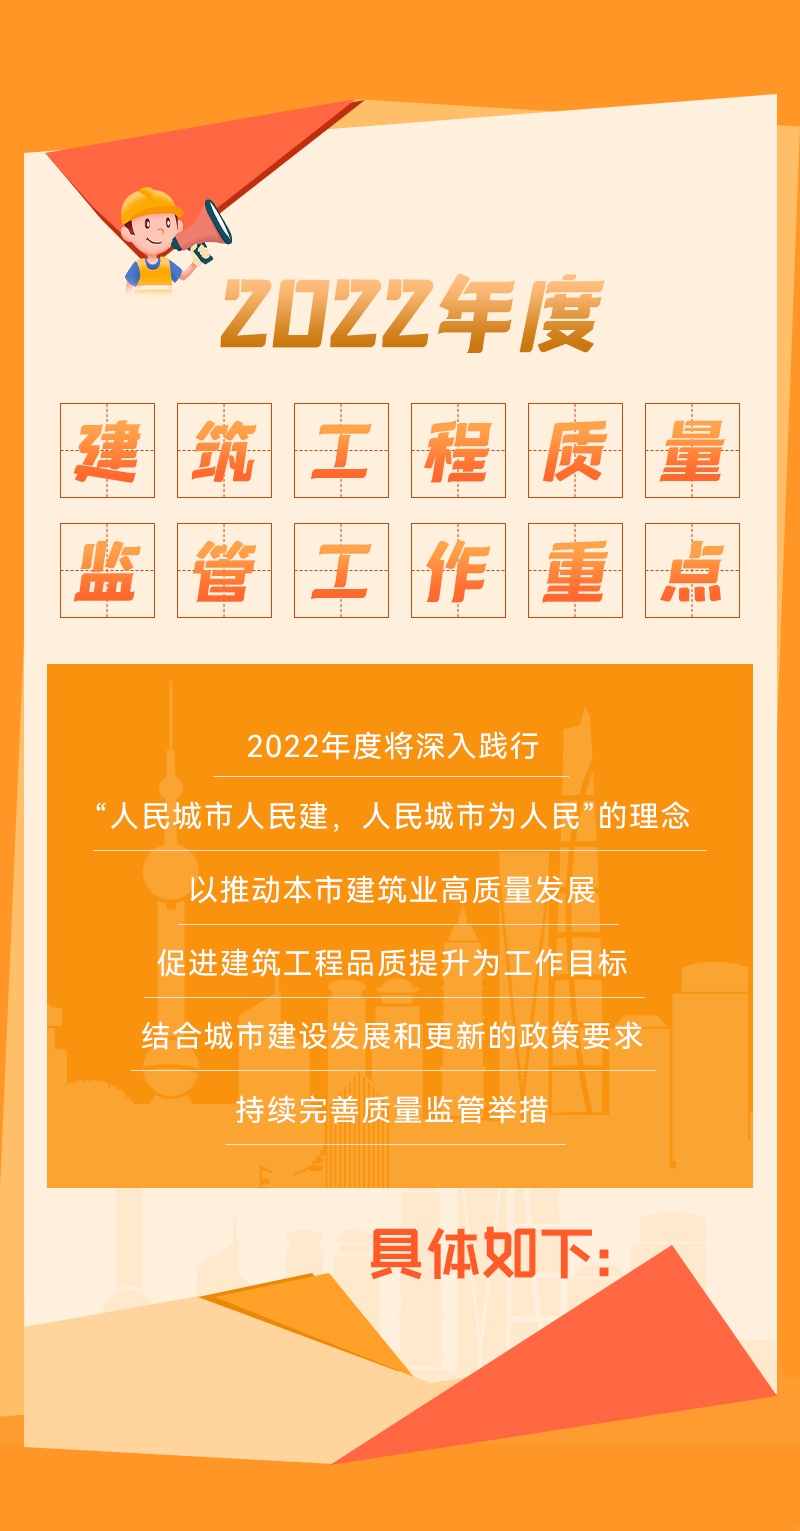 【政策解读】一图读懂上海市2022年度建筑工程质量监管工作重点